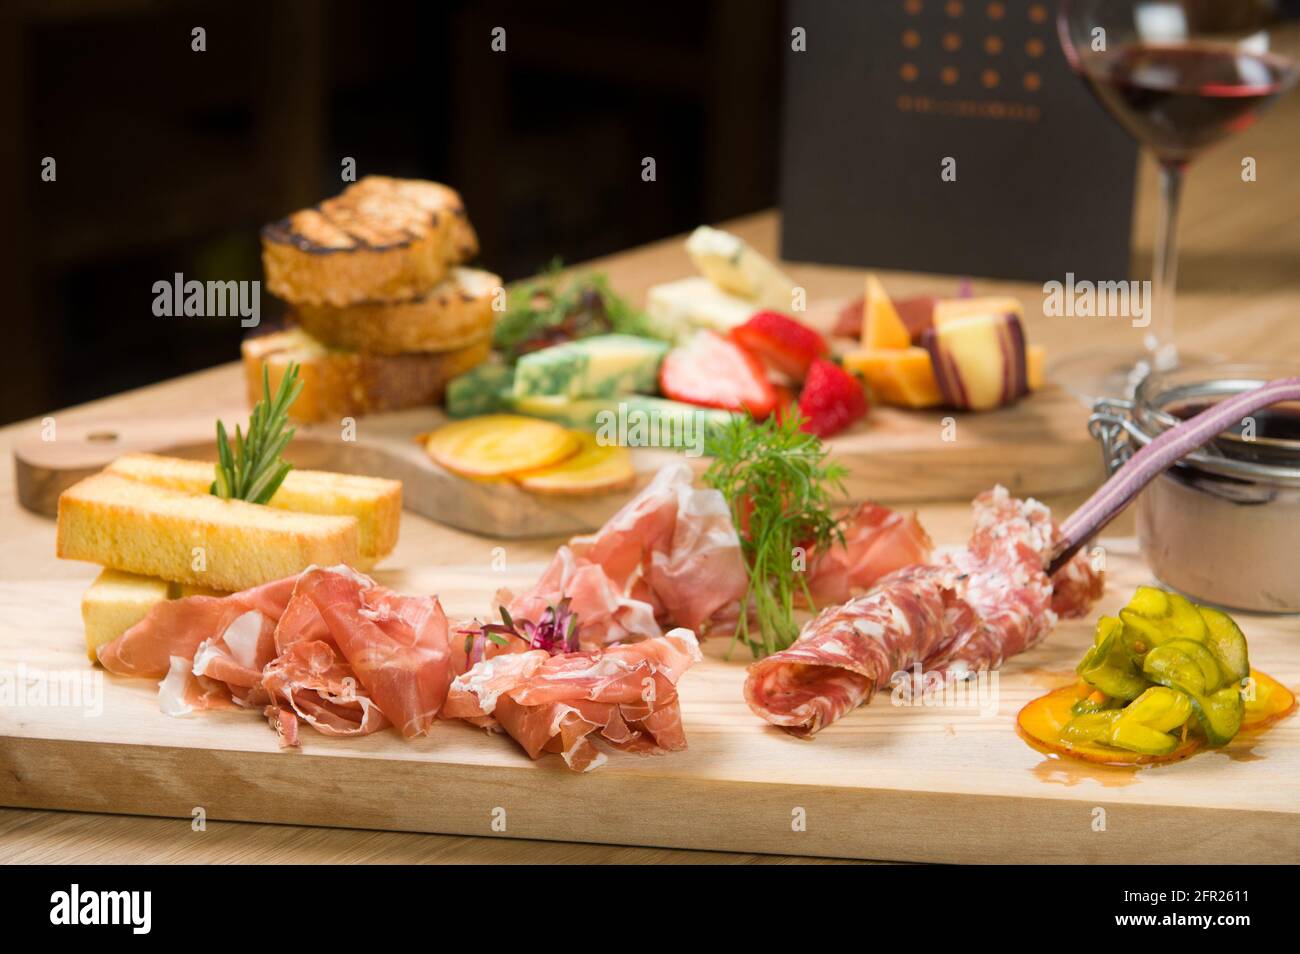 Eine Wurstplatte in einem Whistler-Restaurant. Fleisch, Schinken, Portwein,  Salami, Pastete, Käse und Obst Stockfotografie - Alamy